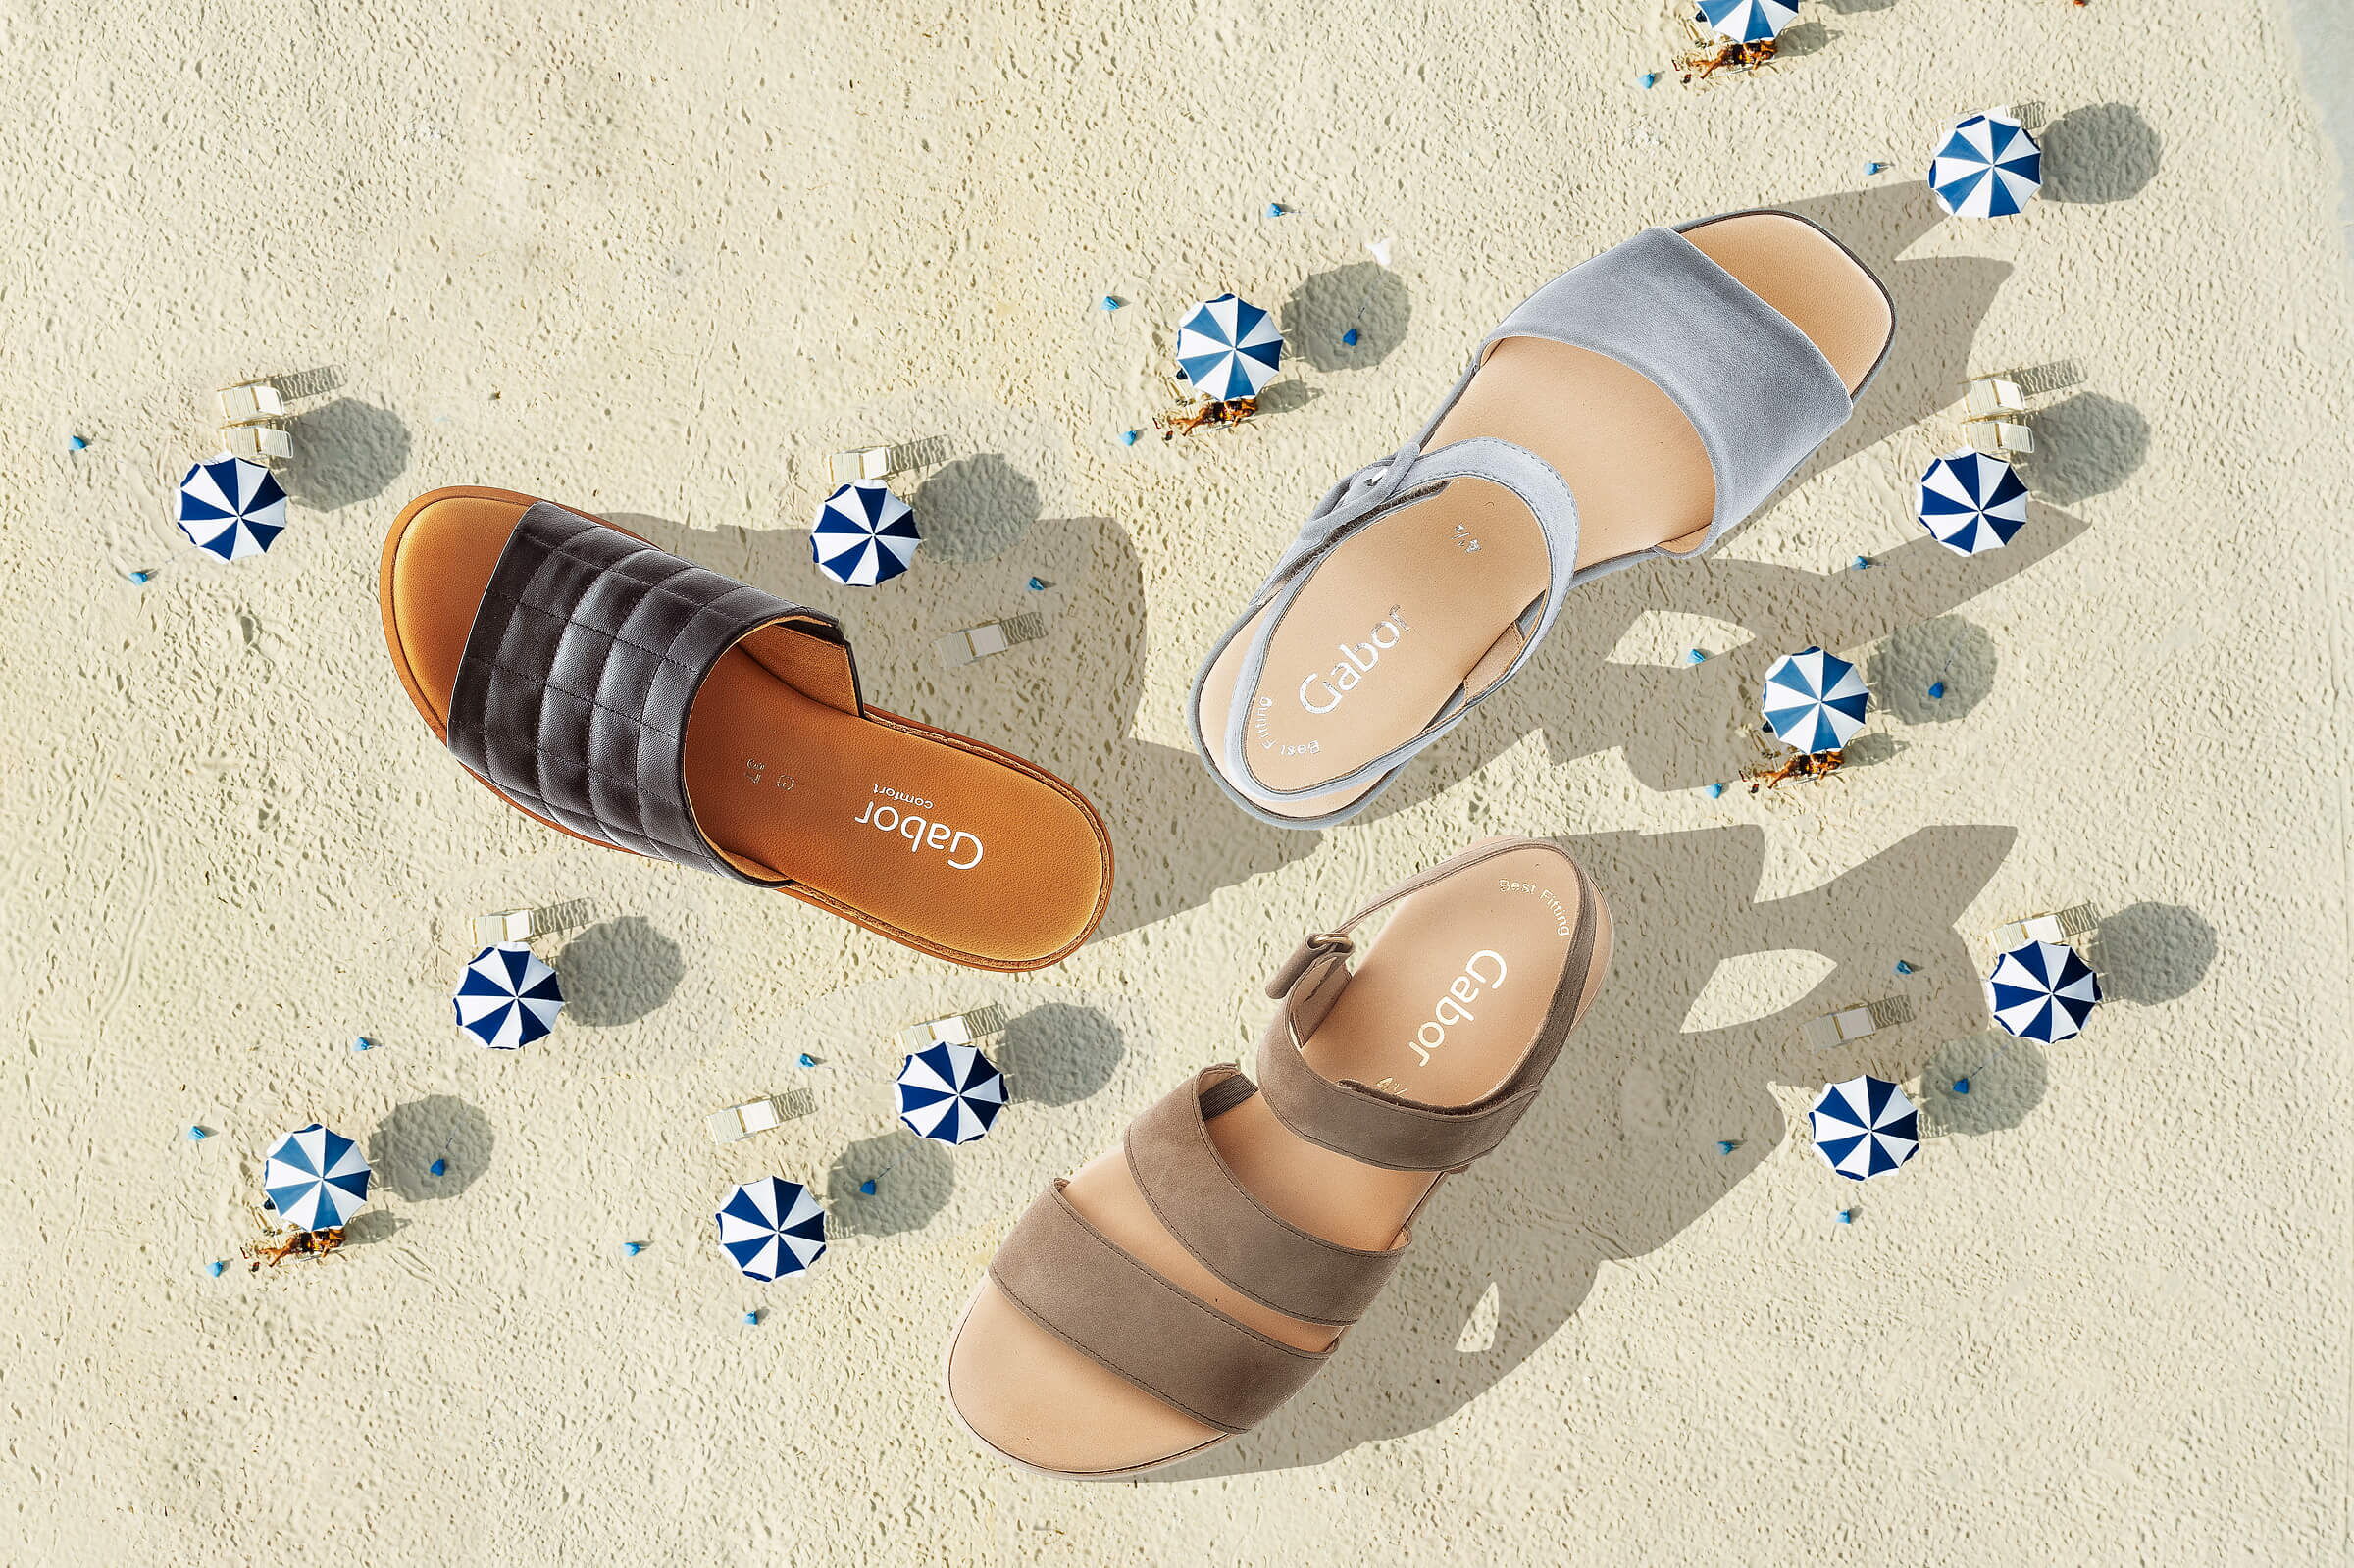 Werbefotografie mit Sandstrand mit Sonnenschirmen und drei Sommersandalen von oben